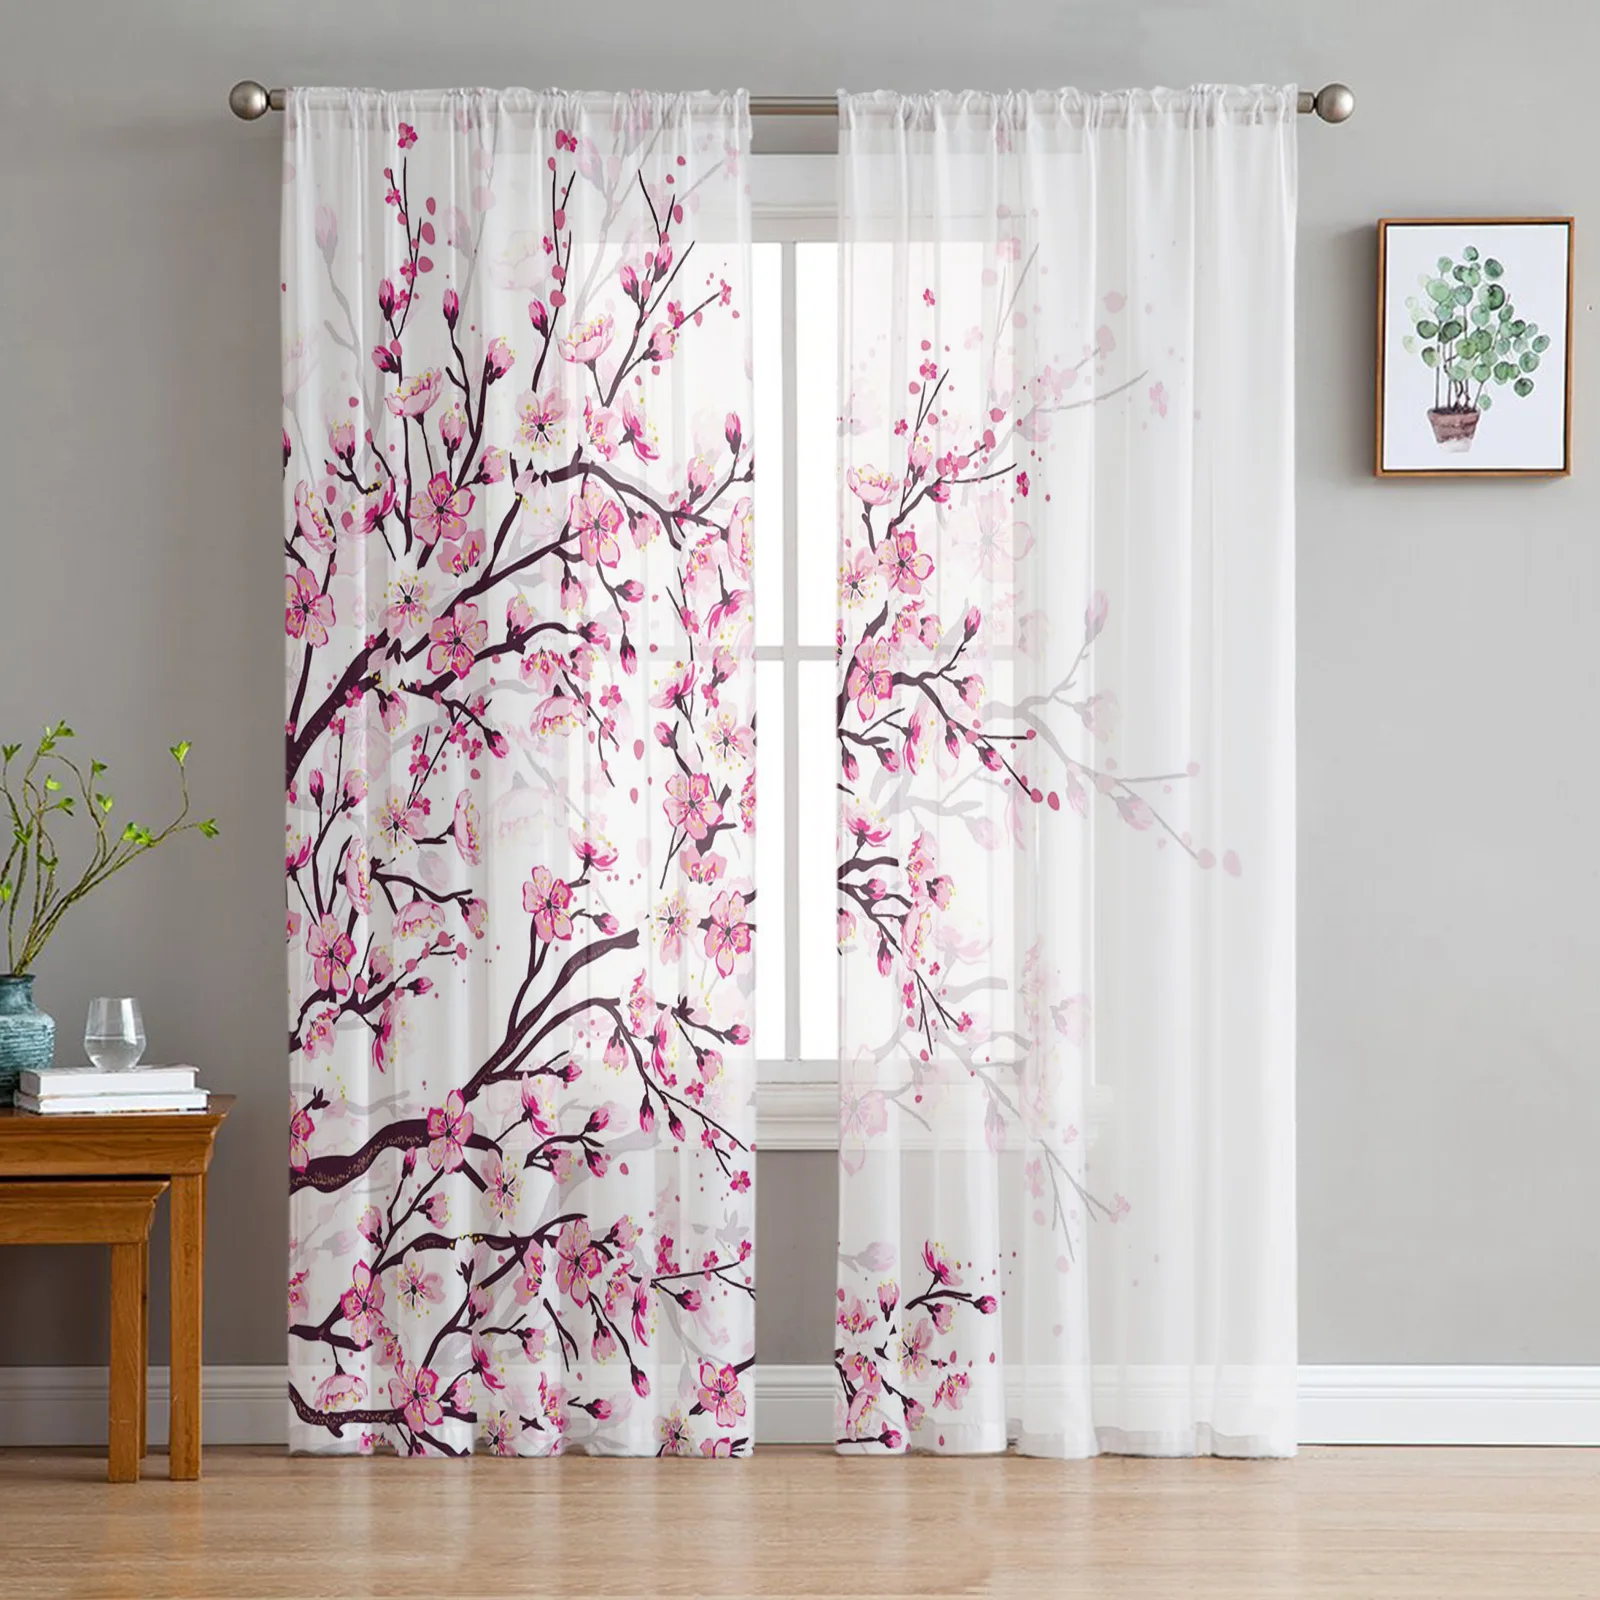 Японская вишня, ветки сливы, Розово-белый цветок, прозрачные занавески для гостиной, Тюлевые окна, Короткие занавески из вуалевой пряжи. 2